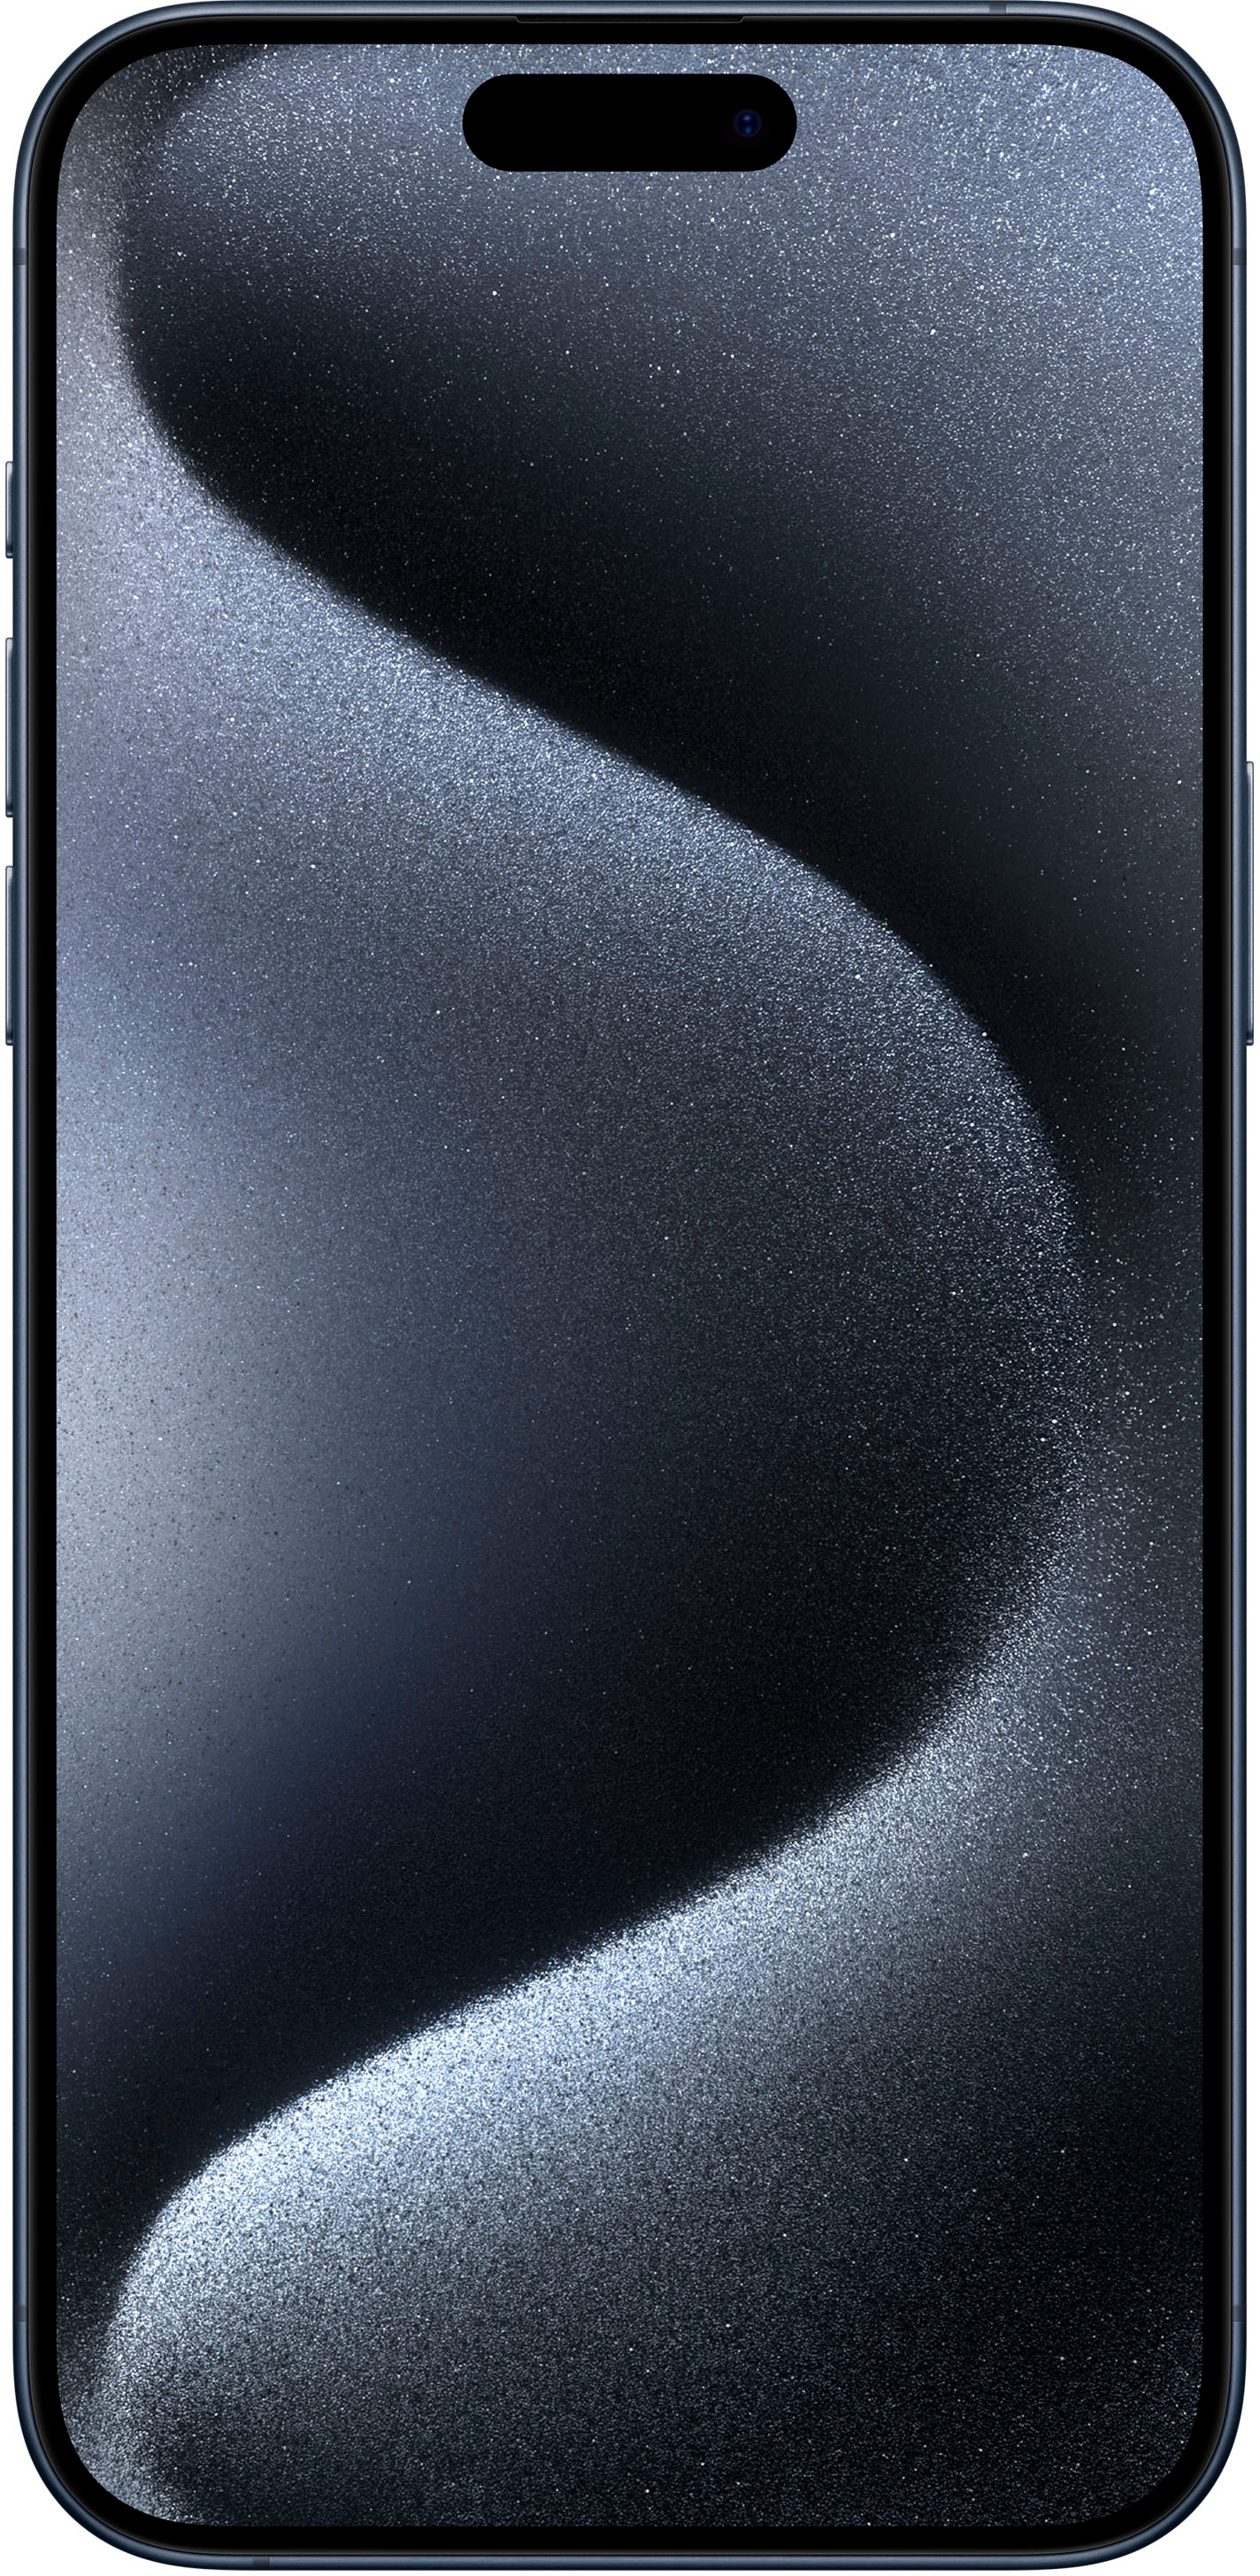 Apple iPhone 15 Pro Max 1TB Blue Titanium (Verizon) MU6J3LL/A - Best Buy